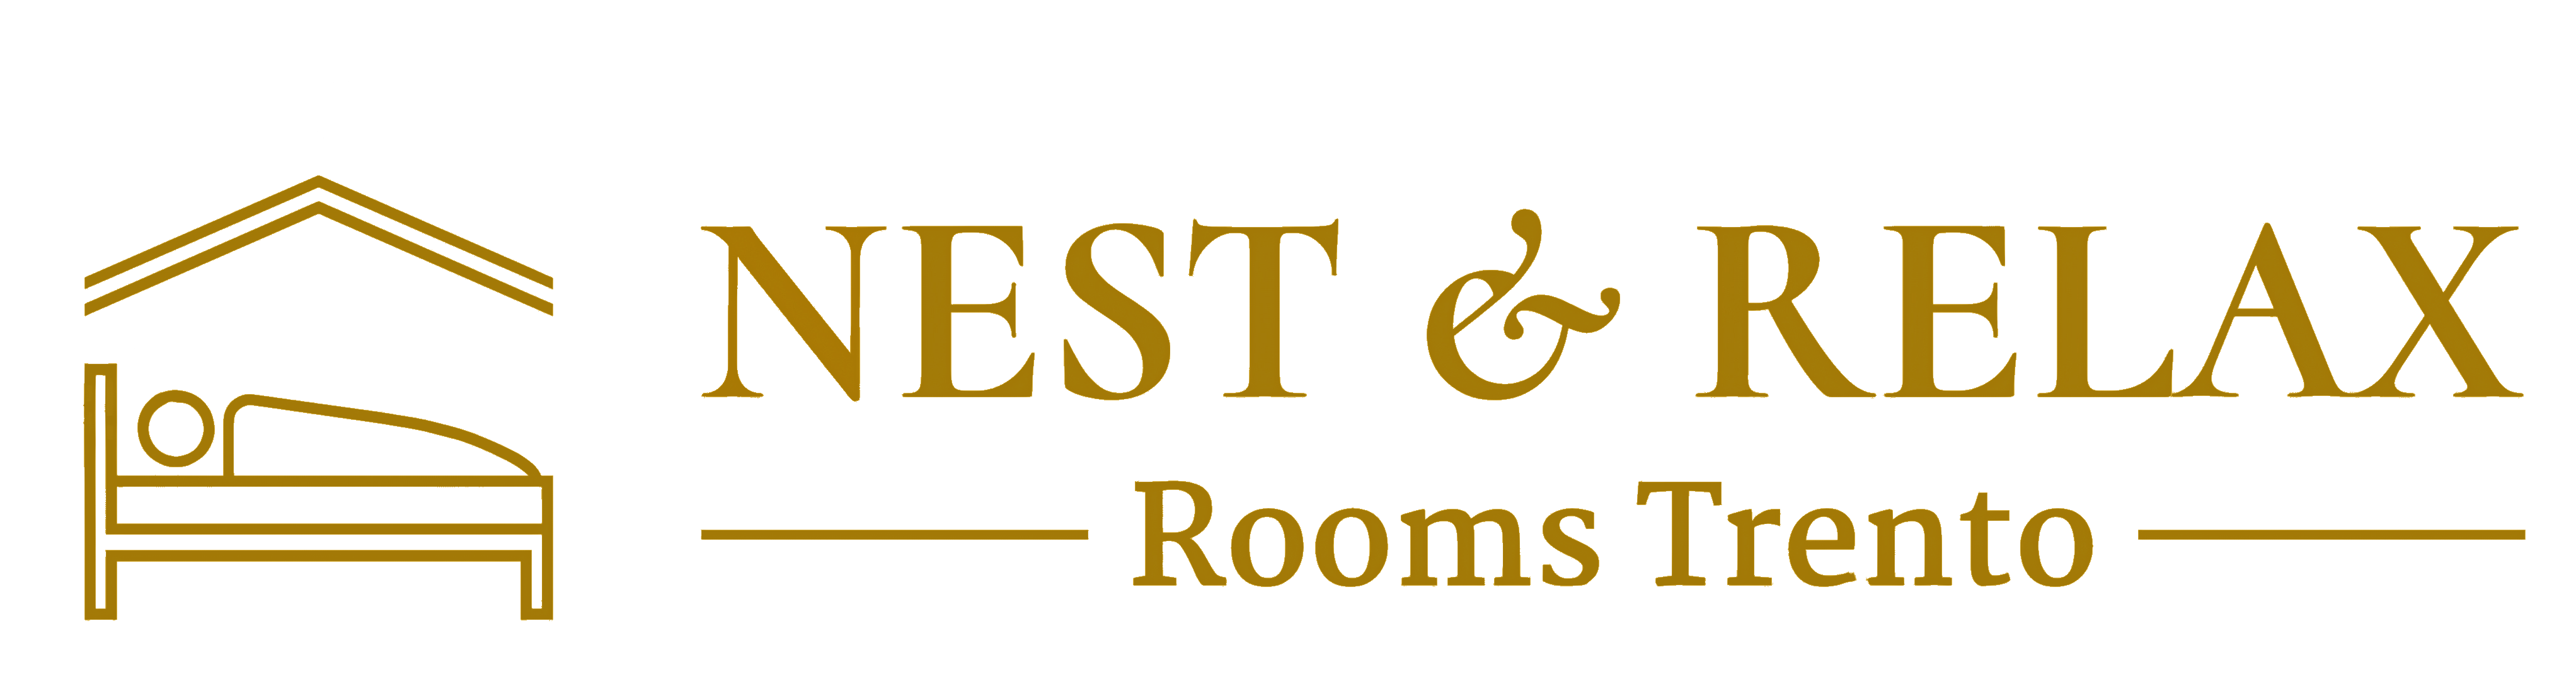 Nest and Relax Logo con sfondo transparente